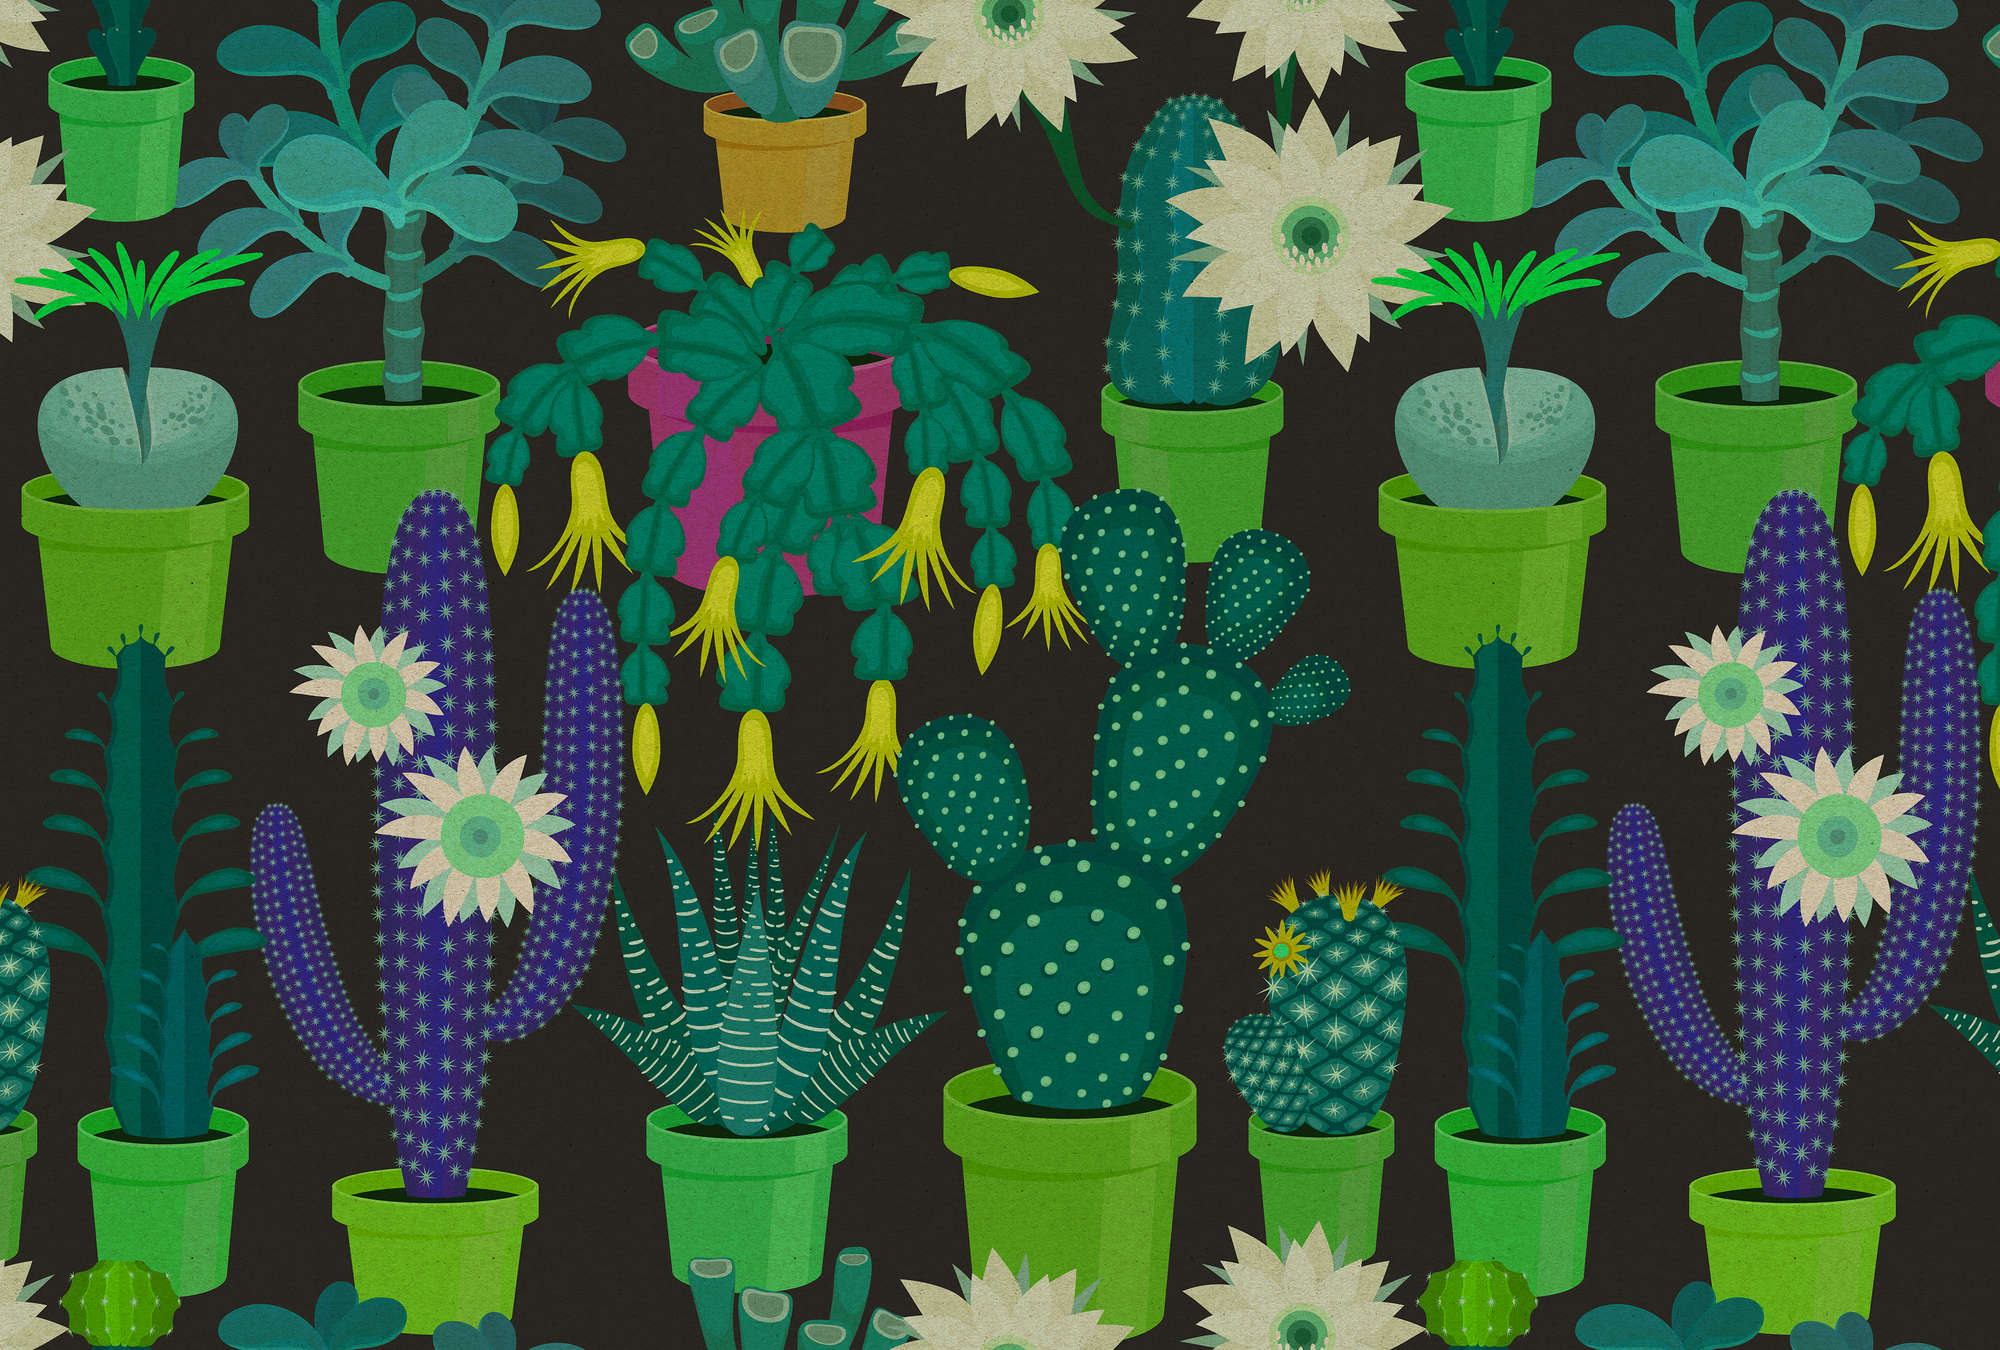             Jardín de cactus 2 - Mural de pared con cactus de colores en estilo cómic en estructura de cartón - Verde, Negro | Perla liso polar
        